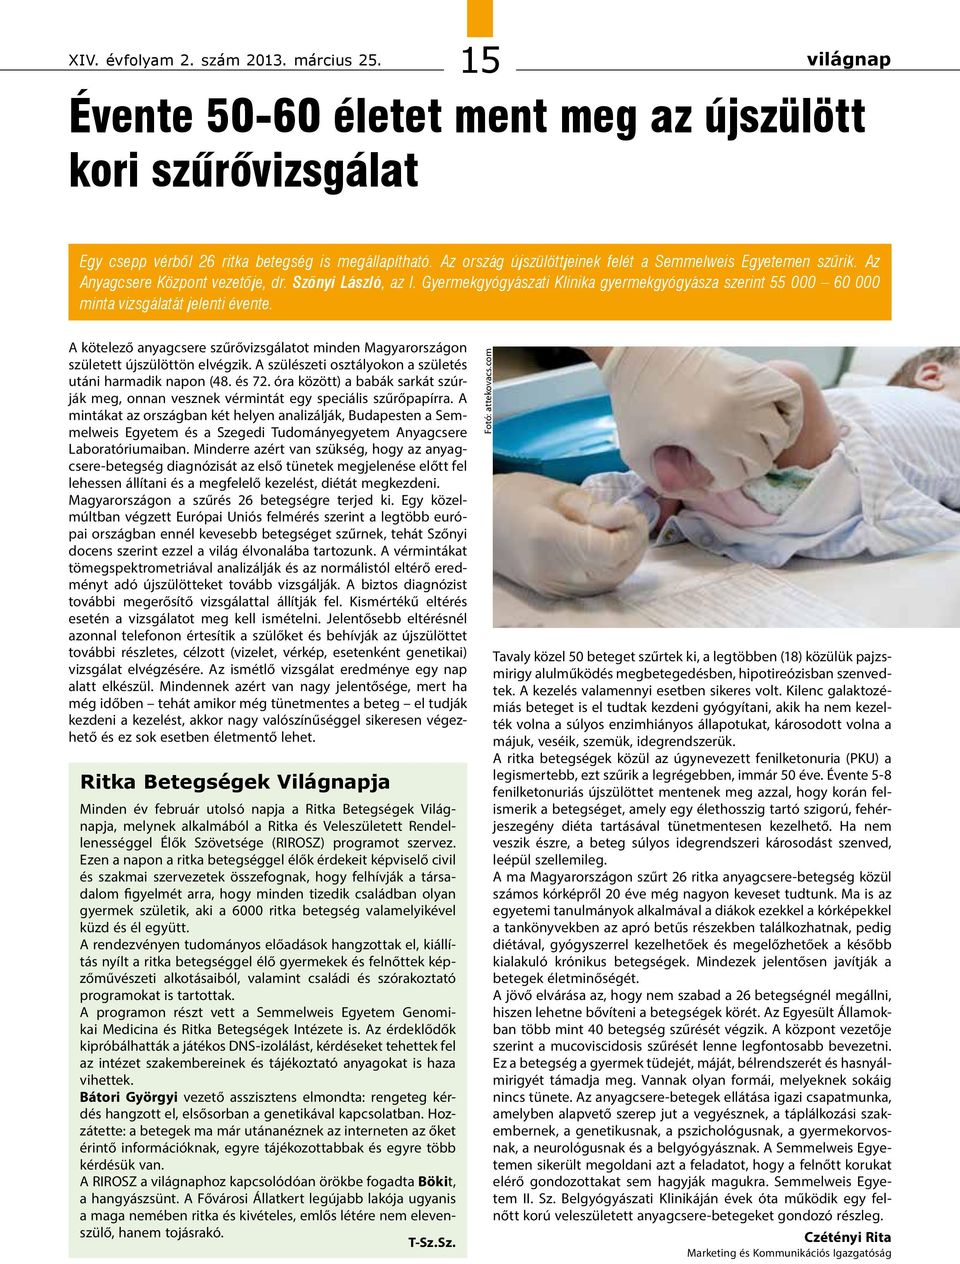 Gyermekgyógyászati Klinika gyermekgyógyásza szerint 55 000 60 000 minta vizsgálatát jelenti évente. A kötelező anyagcsere szűrővizsgálatot minden Magyarországon született újszülöttön elvégzik.